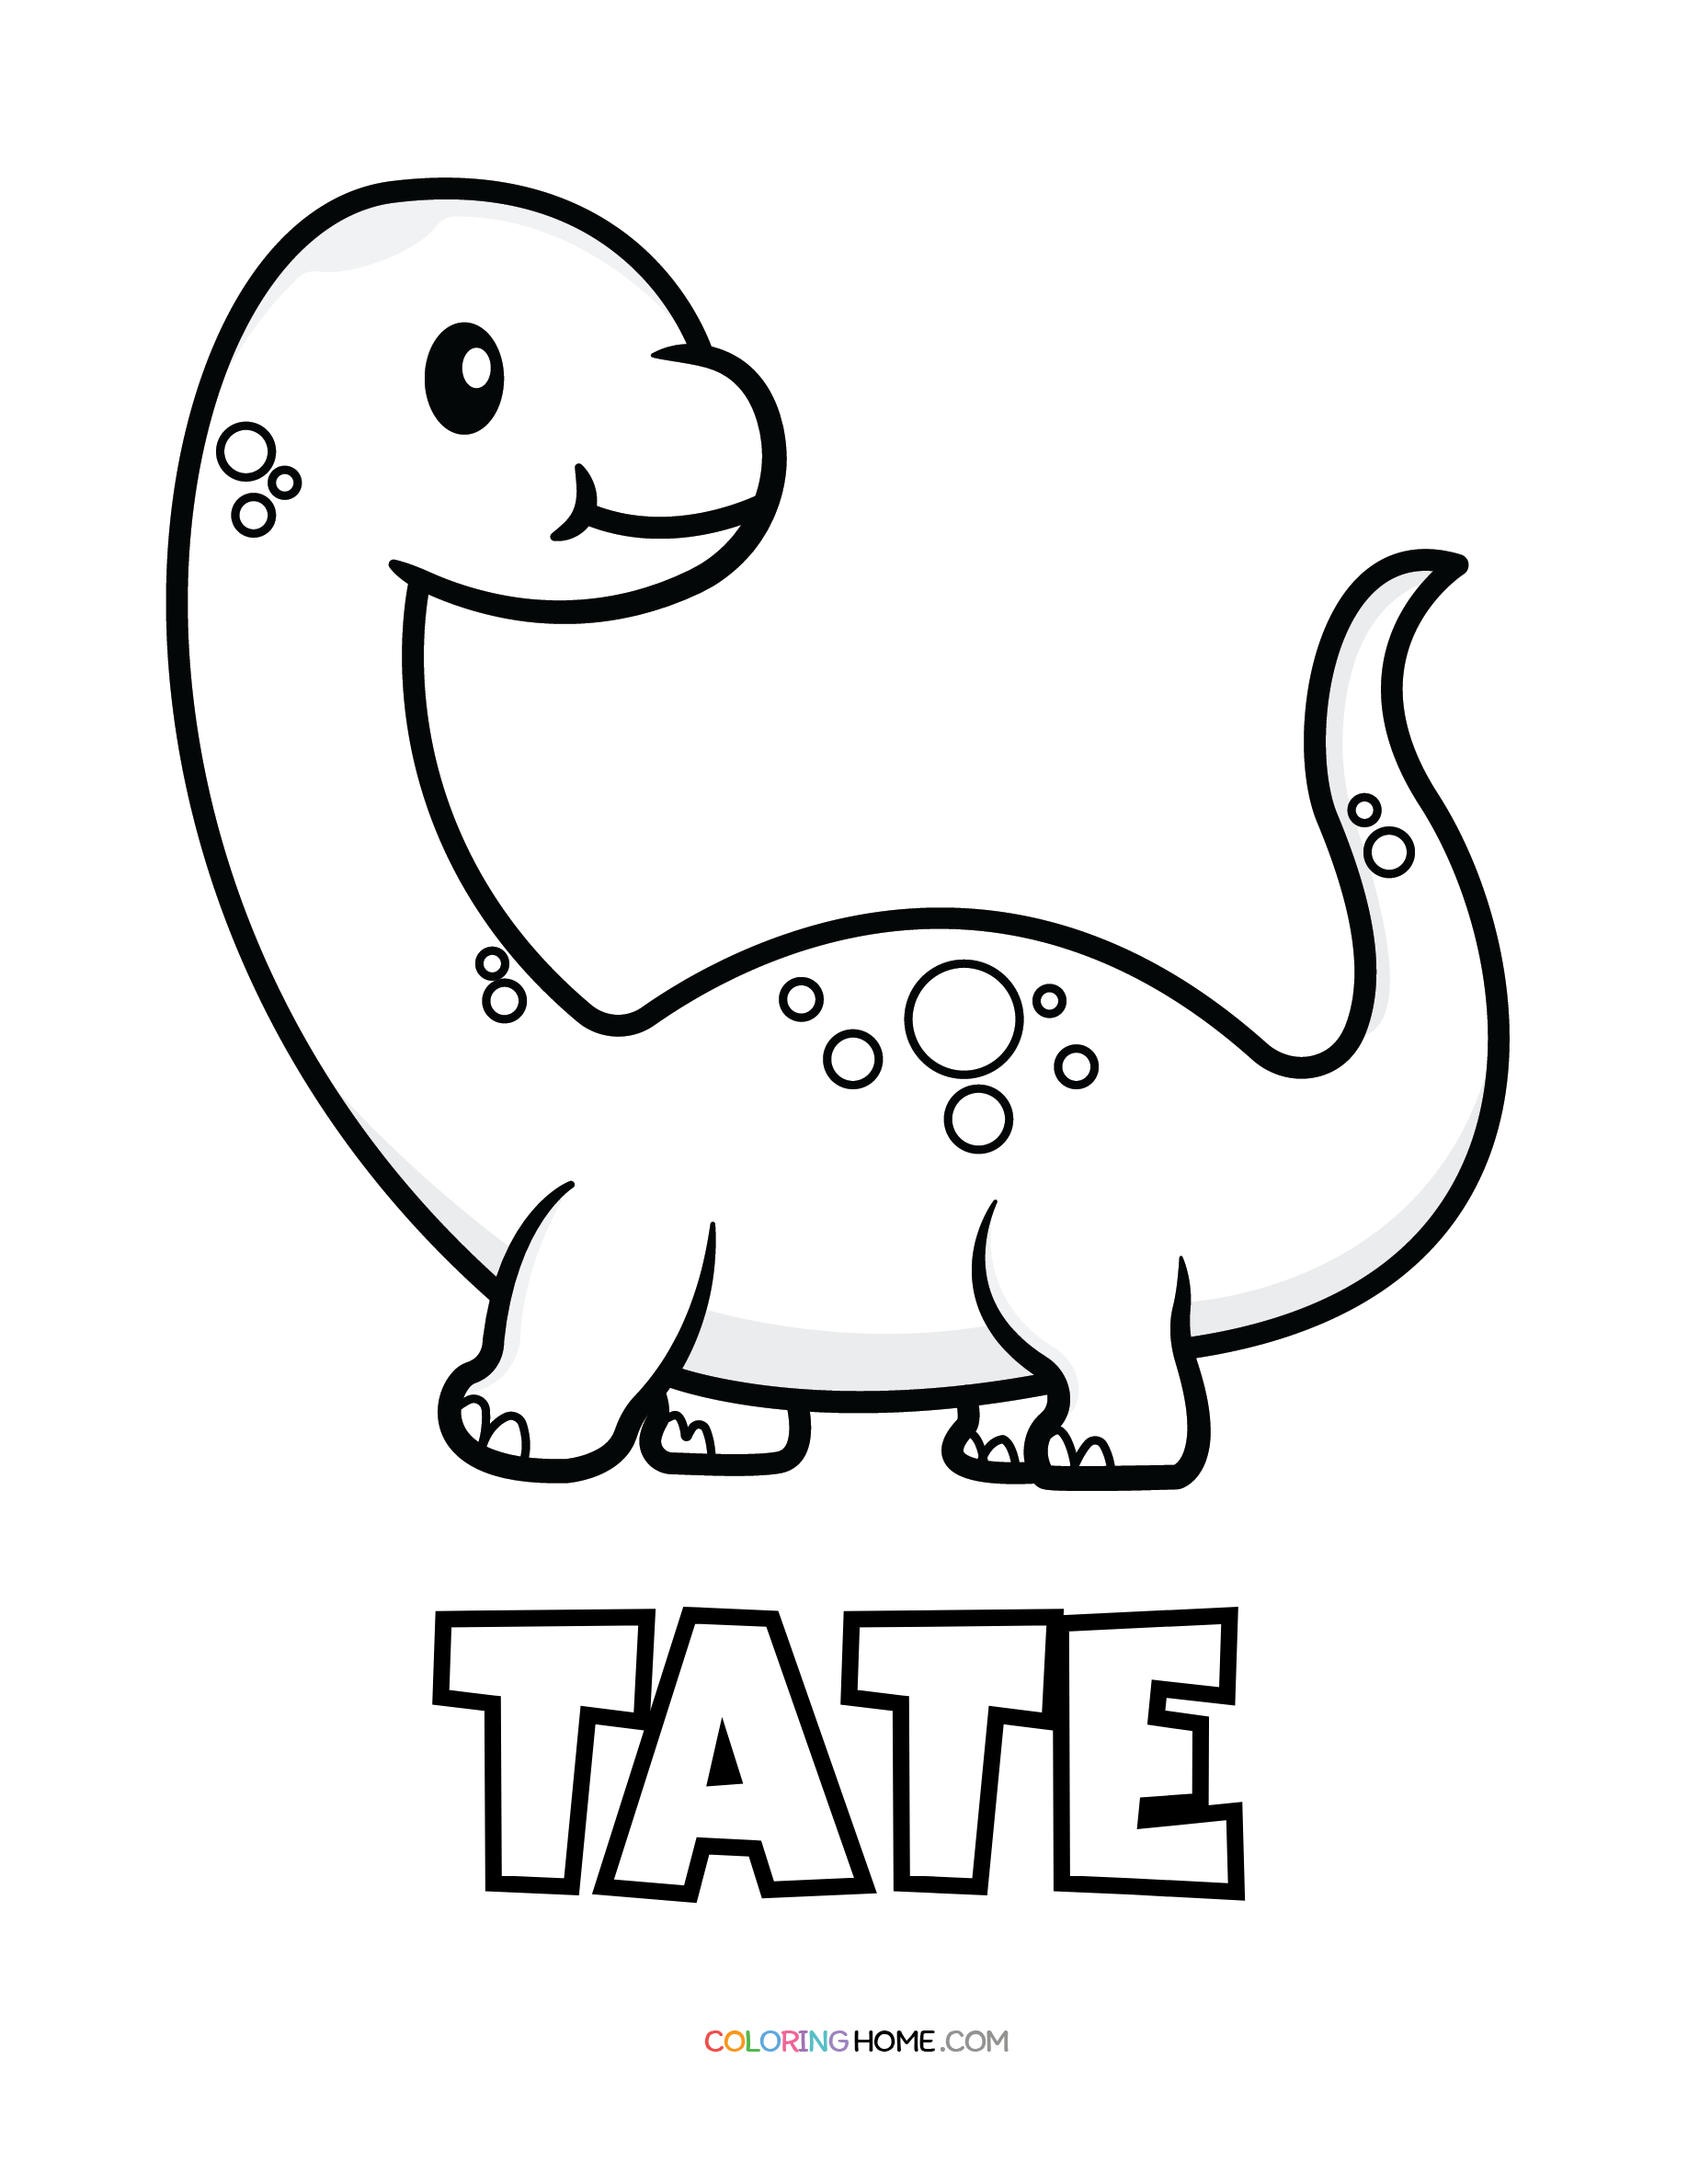 Tate dinosaur coloring page